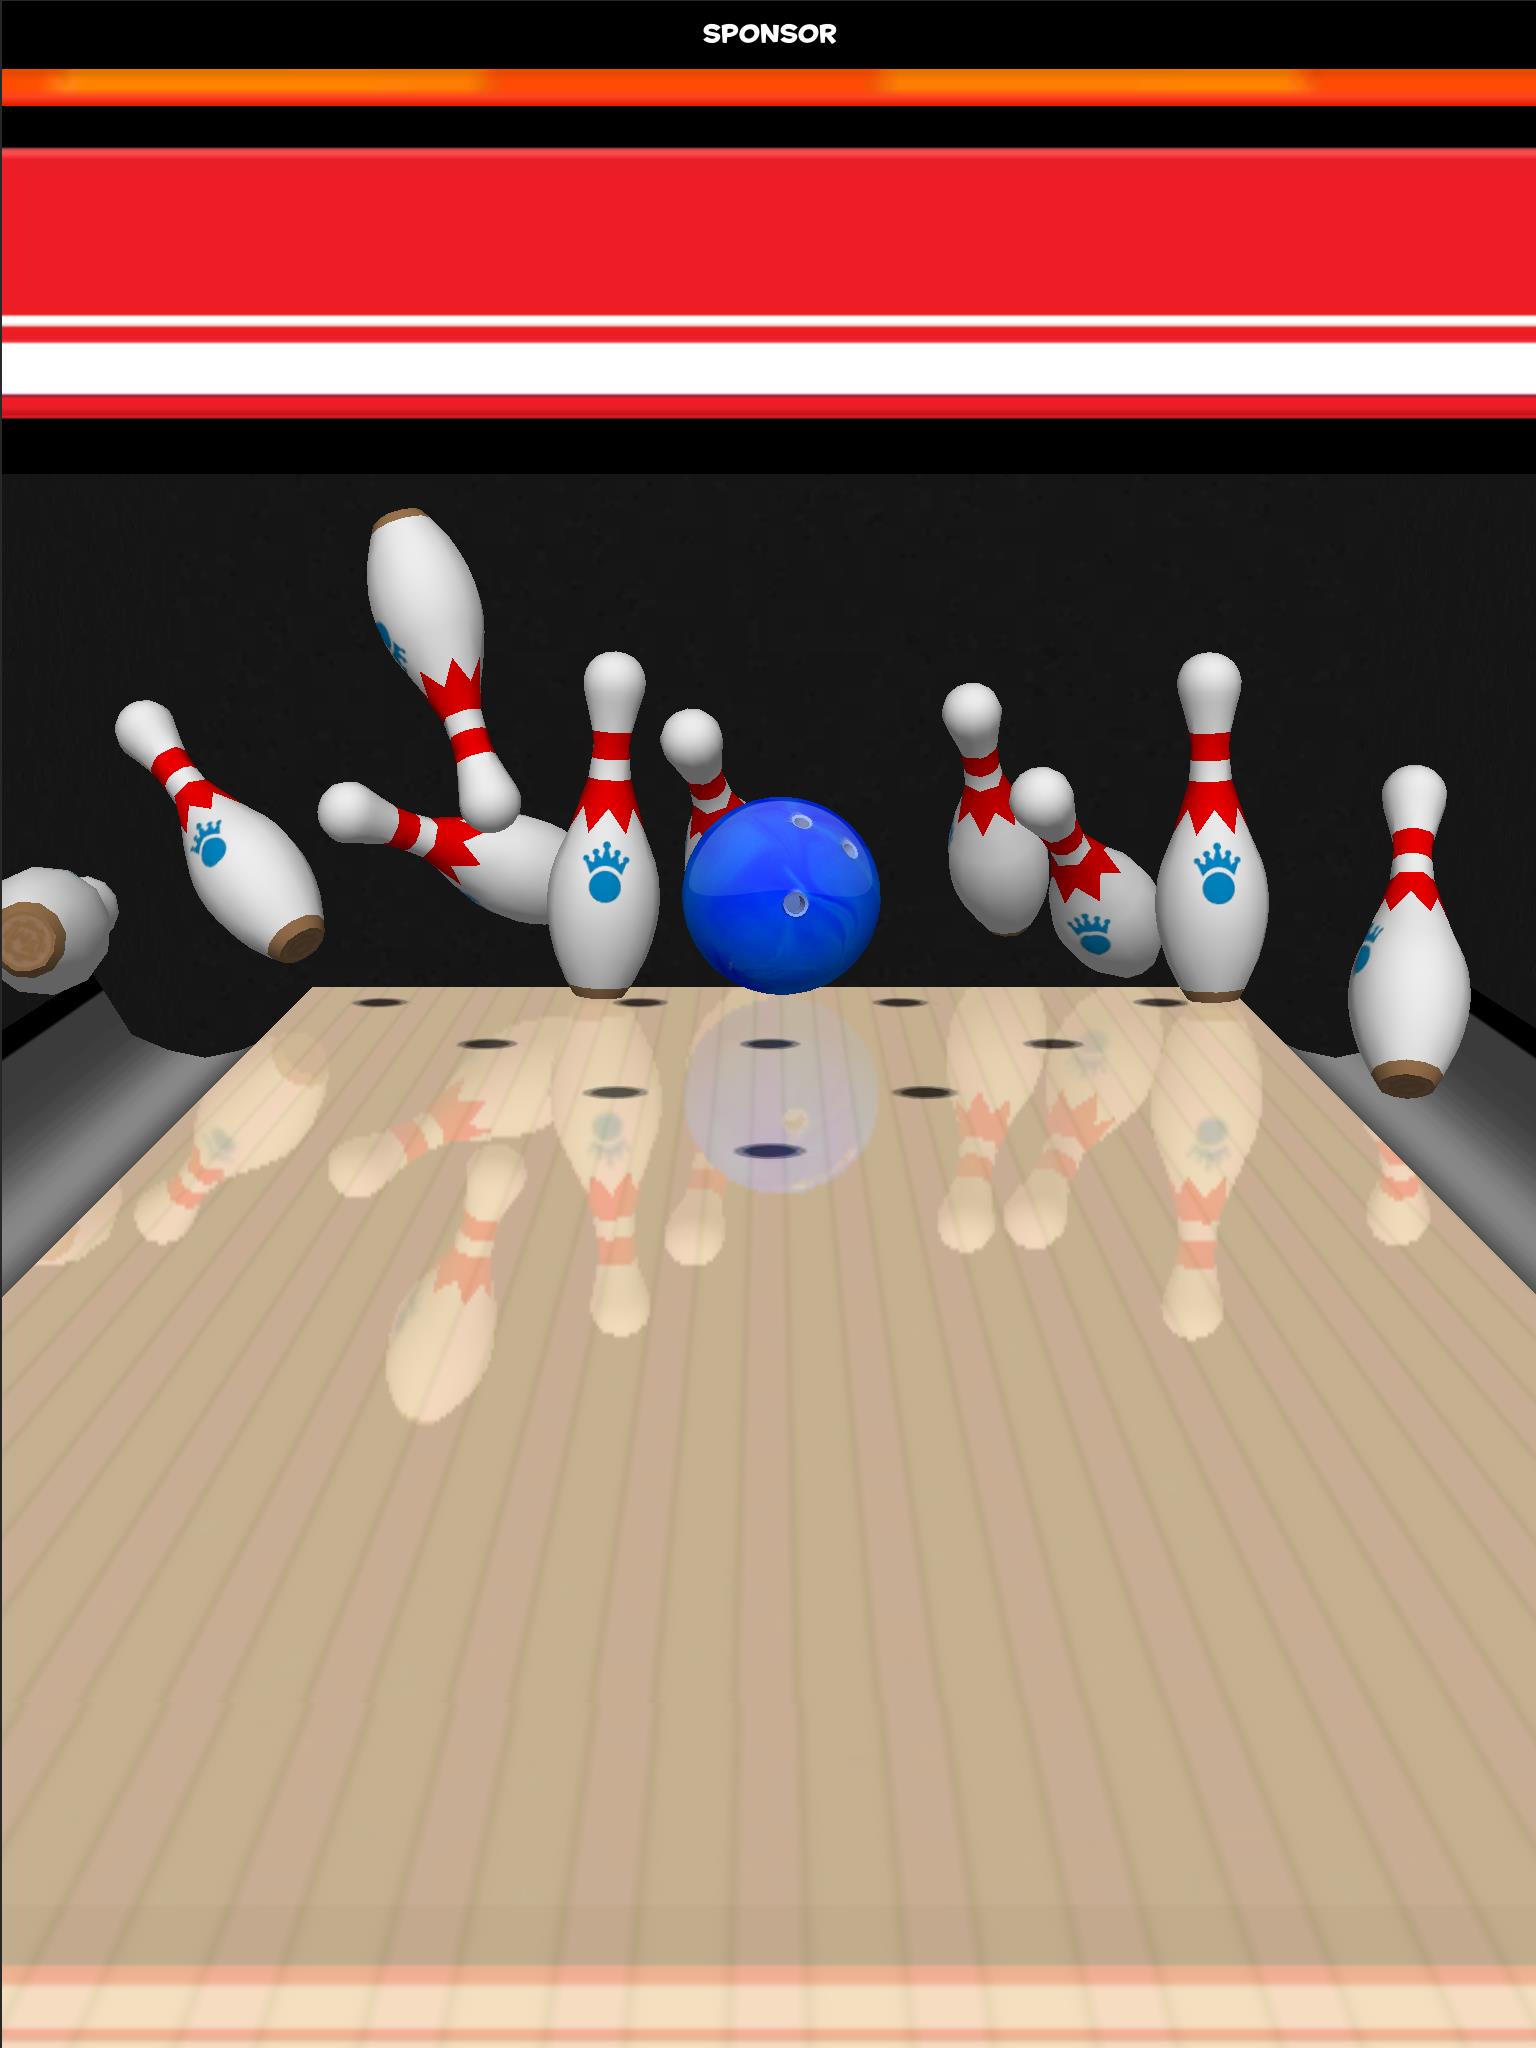 Strike! Ten Pin Bowling Screenshot 17